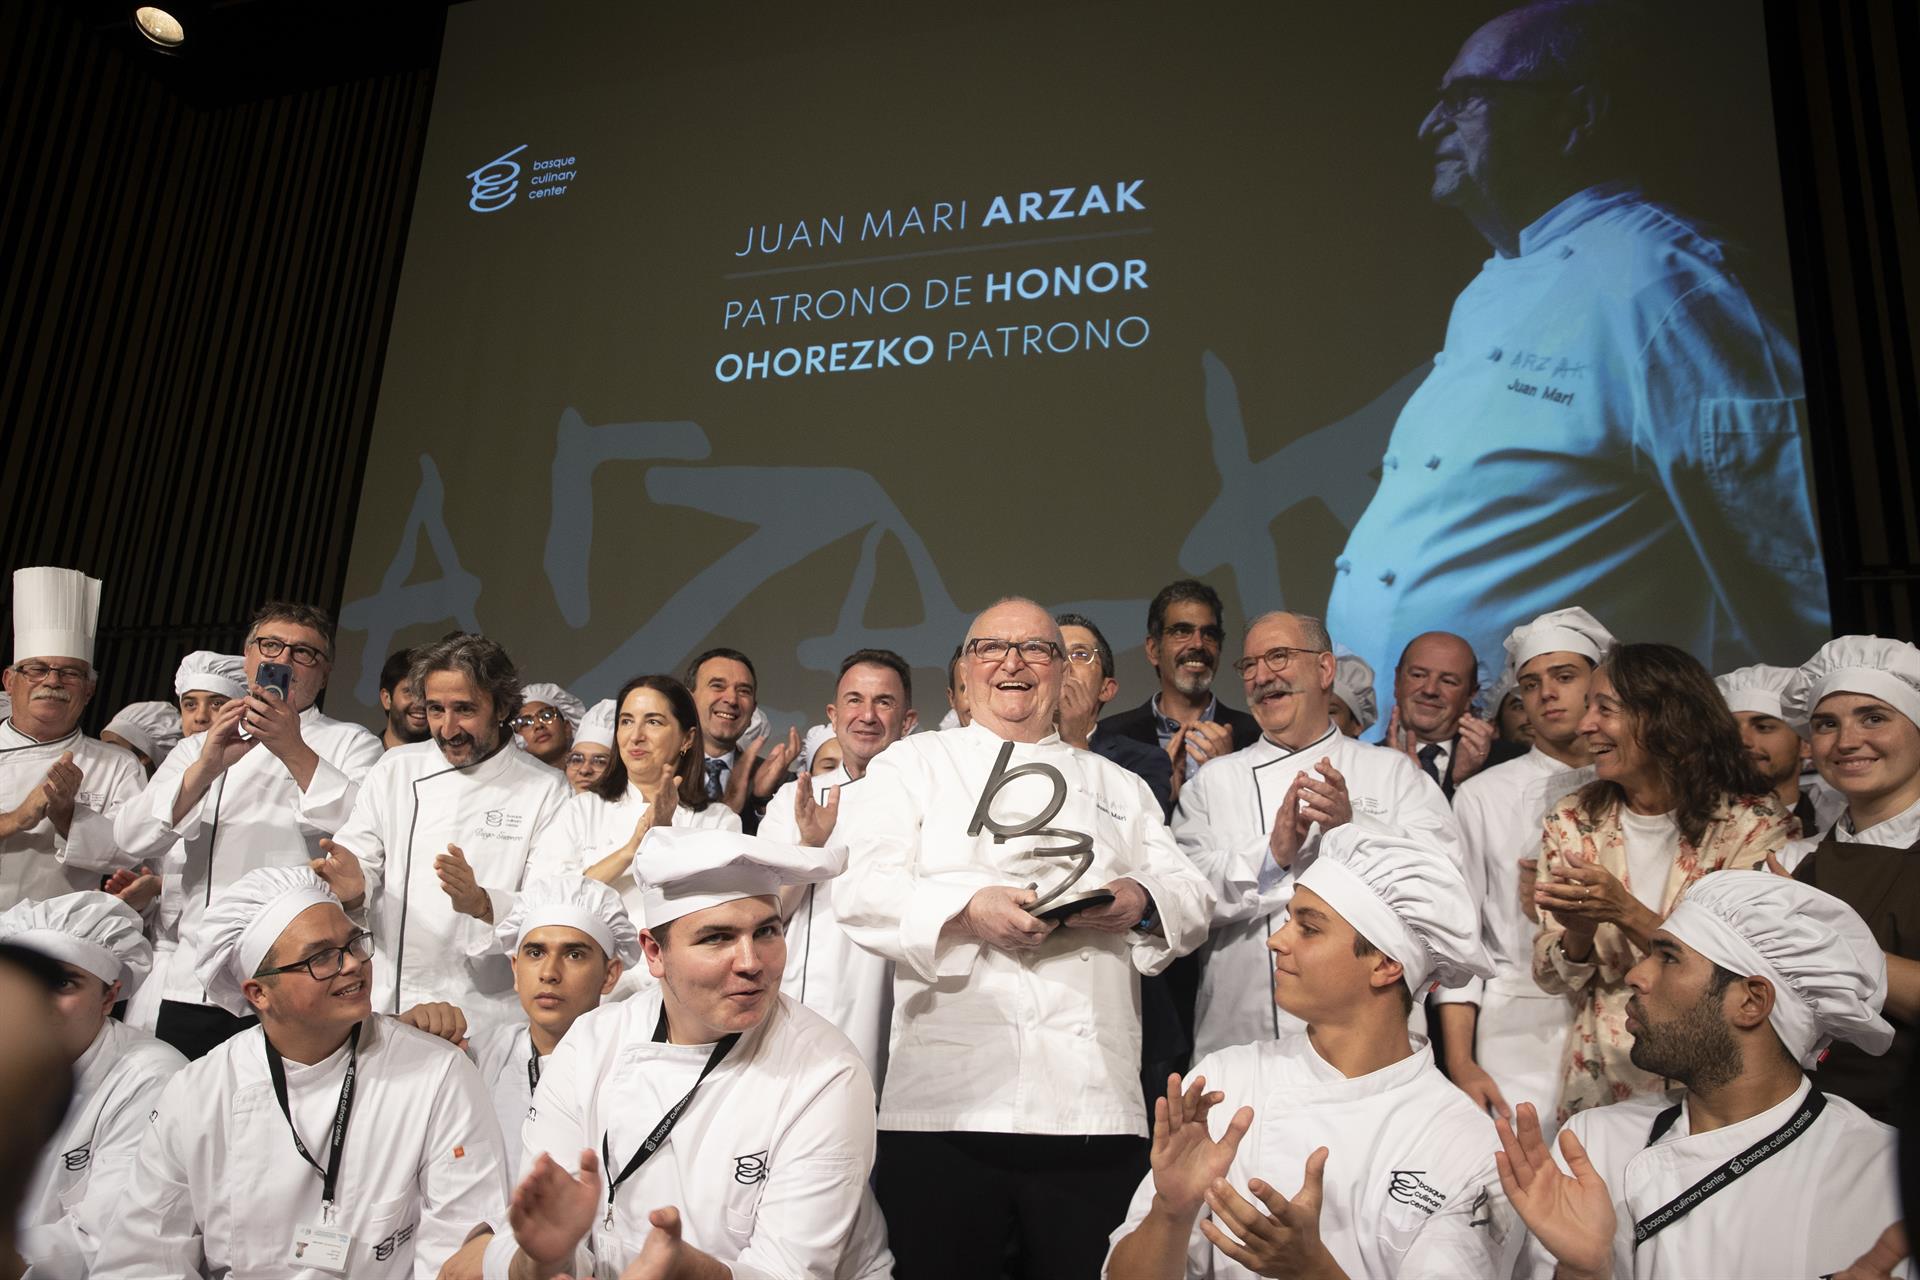 La gastronomía vasca ha homenajeado este martes al cocinero Juan Mari Arzak (c), quien será nombrado patrono de honor del Basque Culinary Center, durante la celebración del primer gran evento organizado en San Sebastián por la plataforma "Mantala". EFE/ Javier Etxezarreta